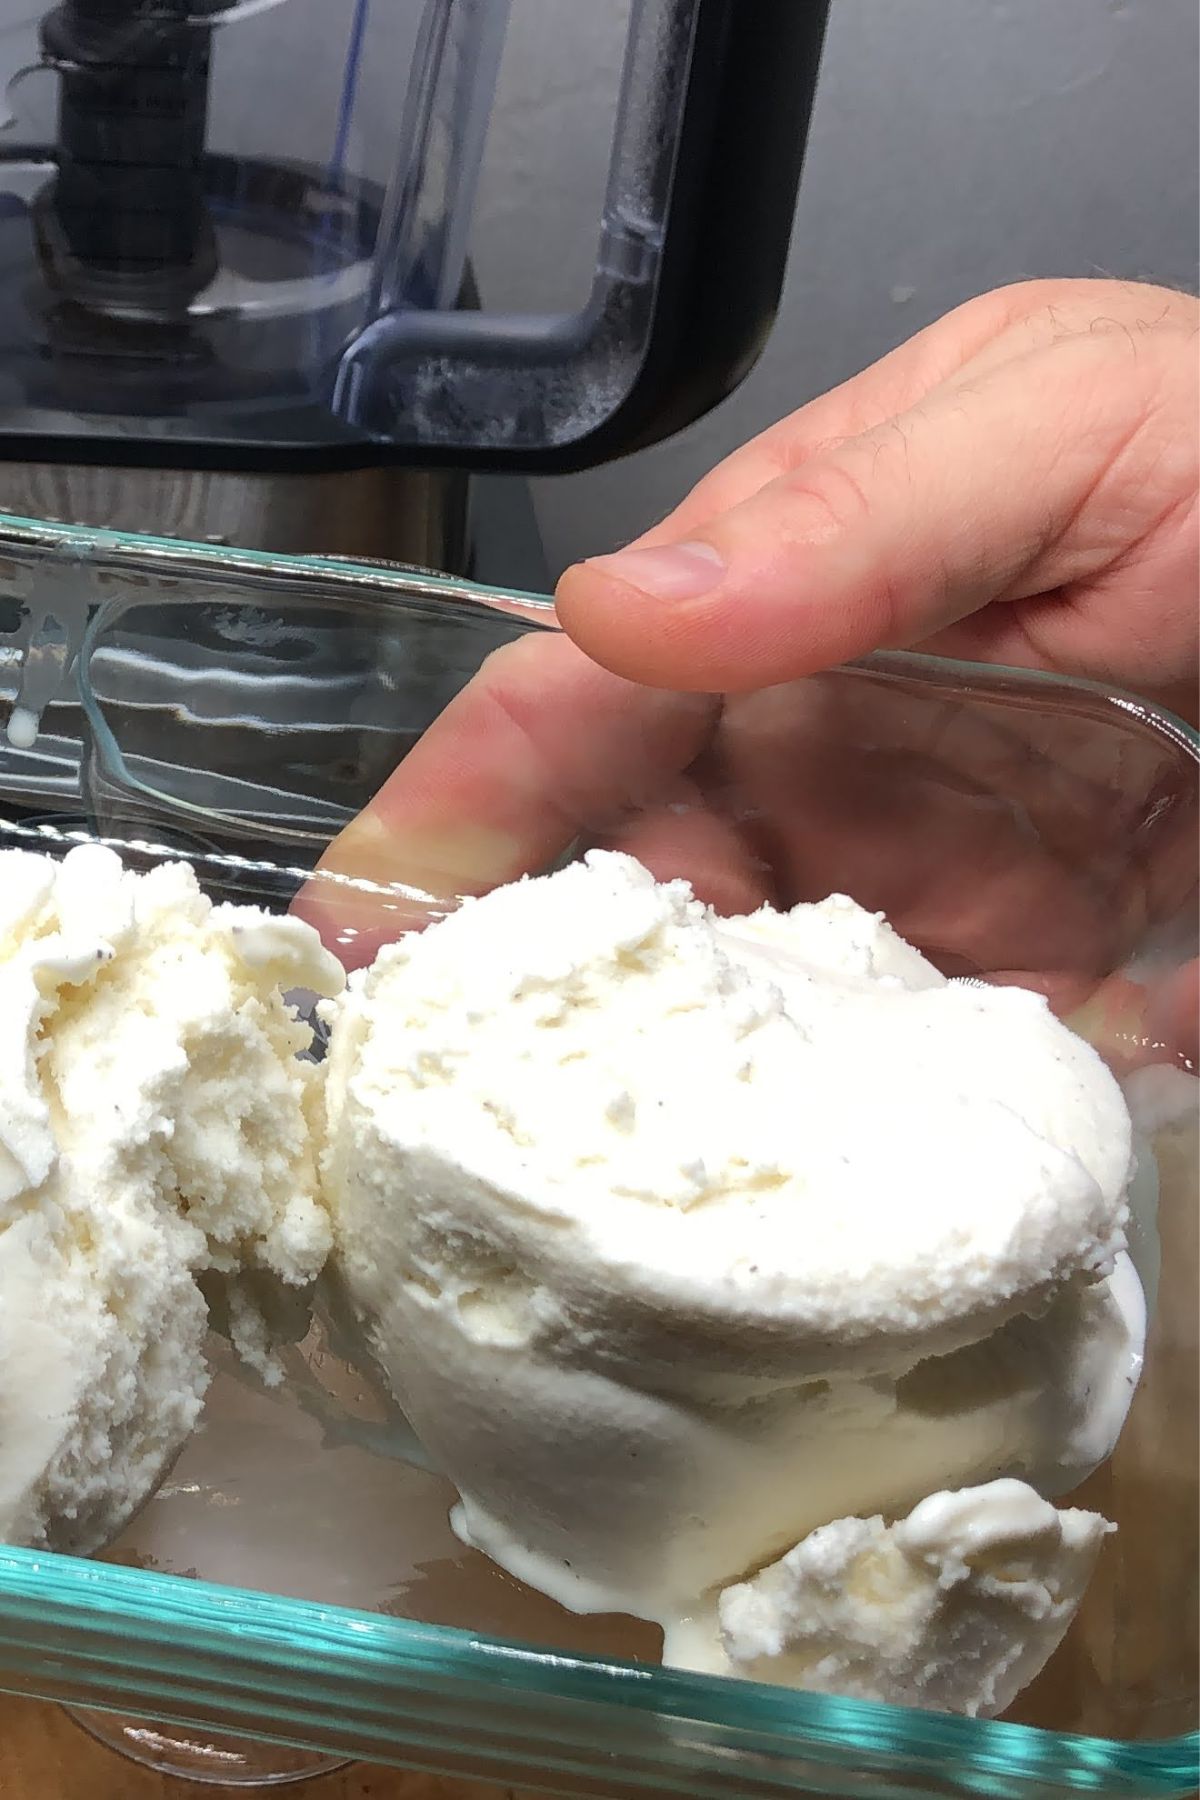 Two scoops of vanilla ice cream.